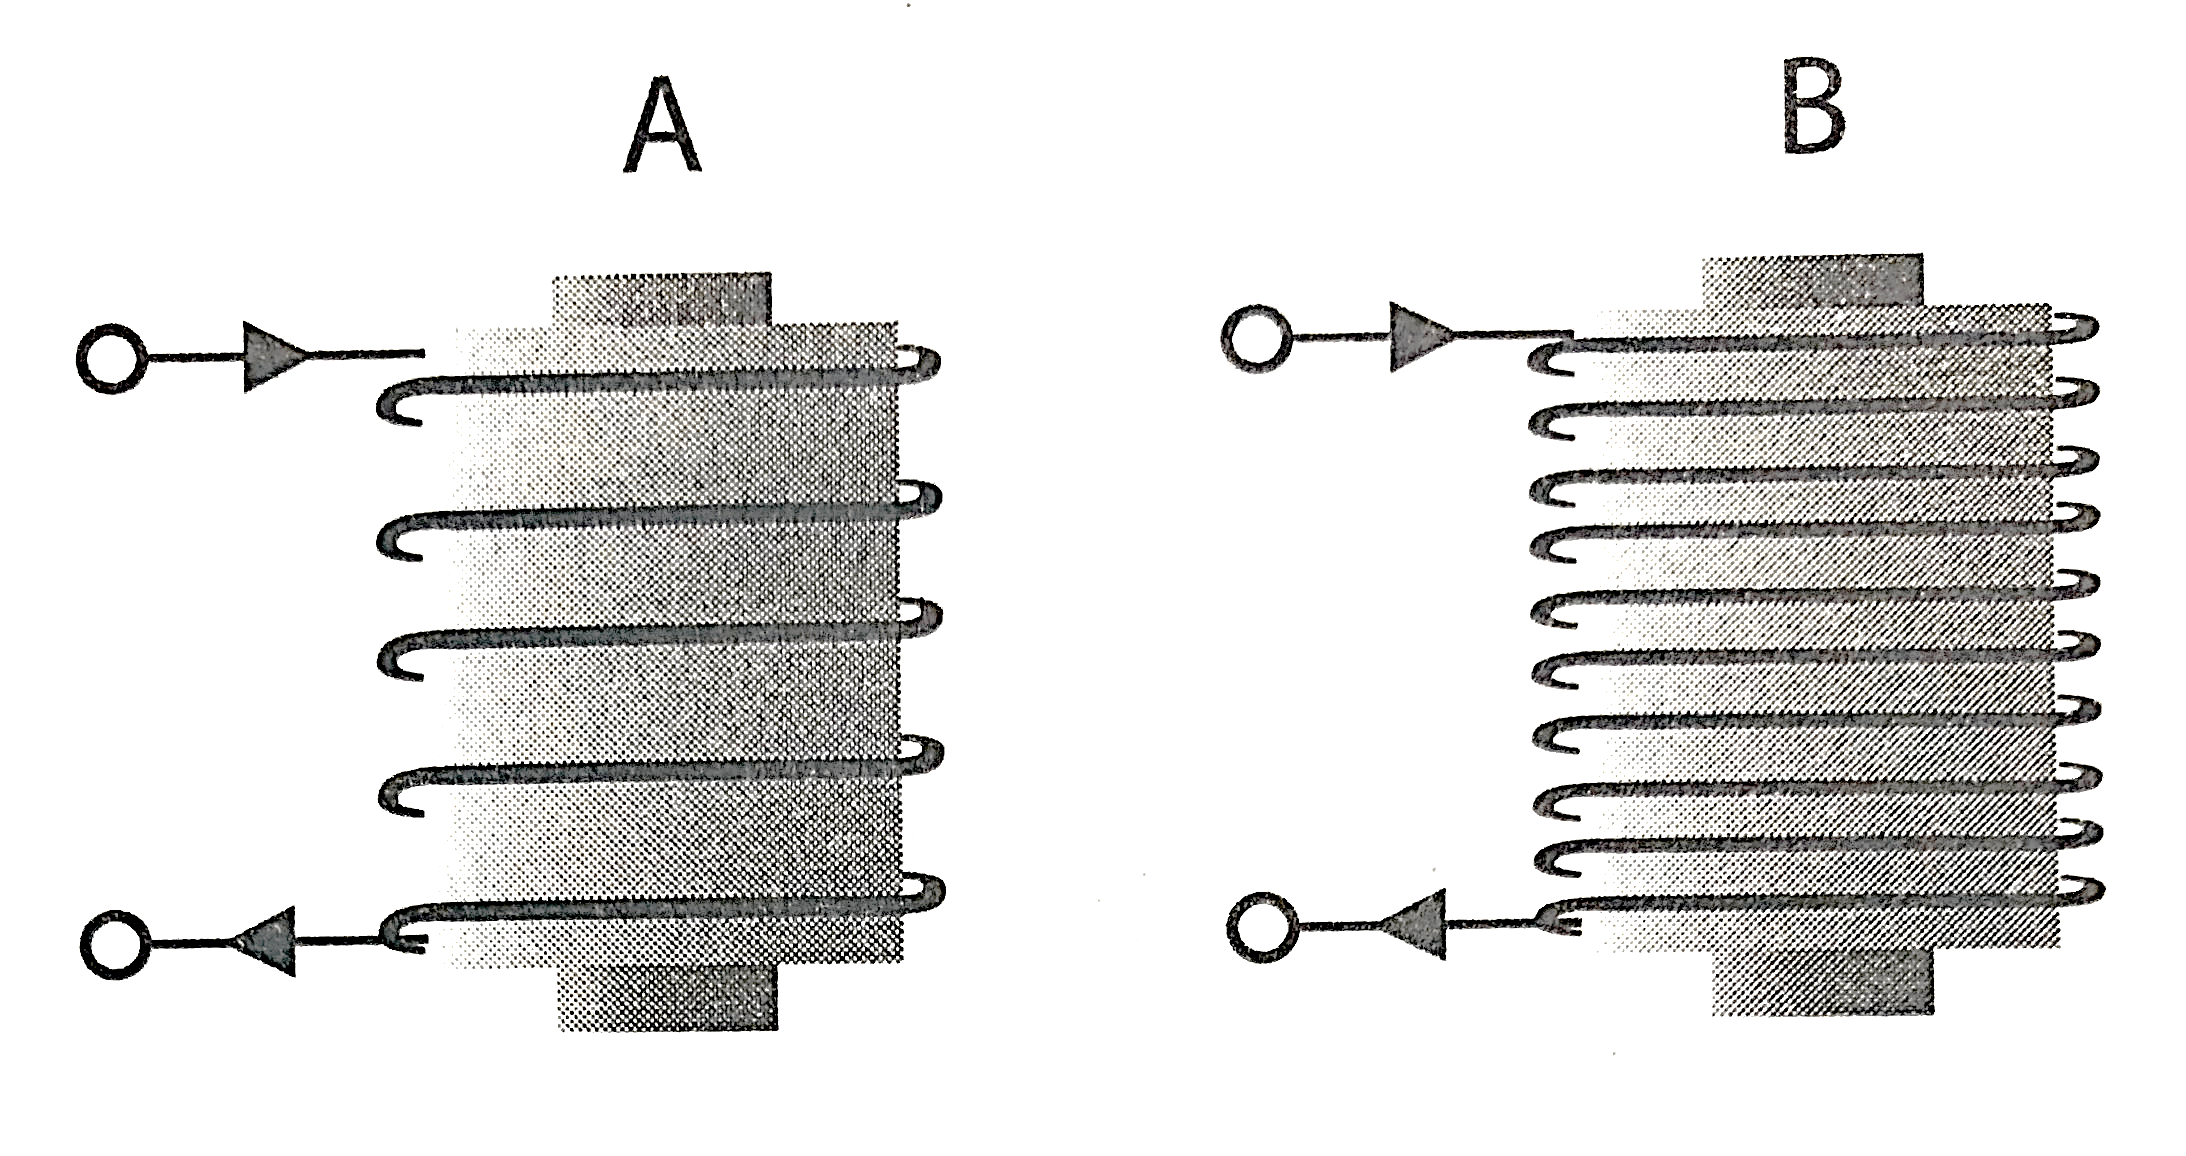 Hình bên vẽ hai nam châm điện A, B. Mỗi nam châm điện đều có cùng một dòng điện chạy vào ống dây